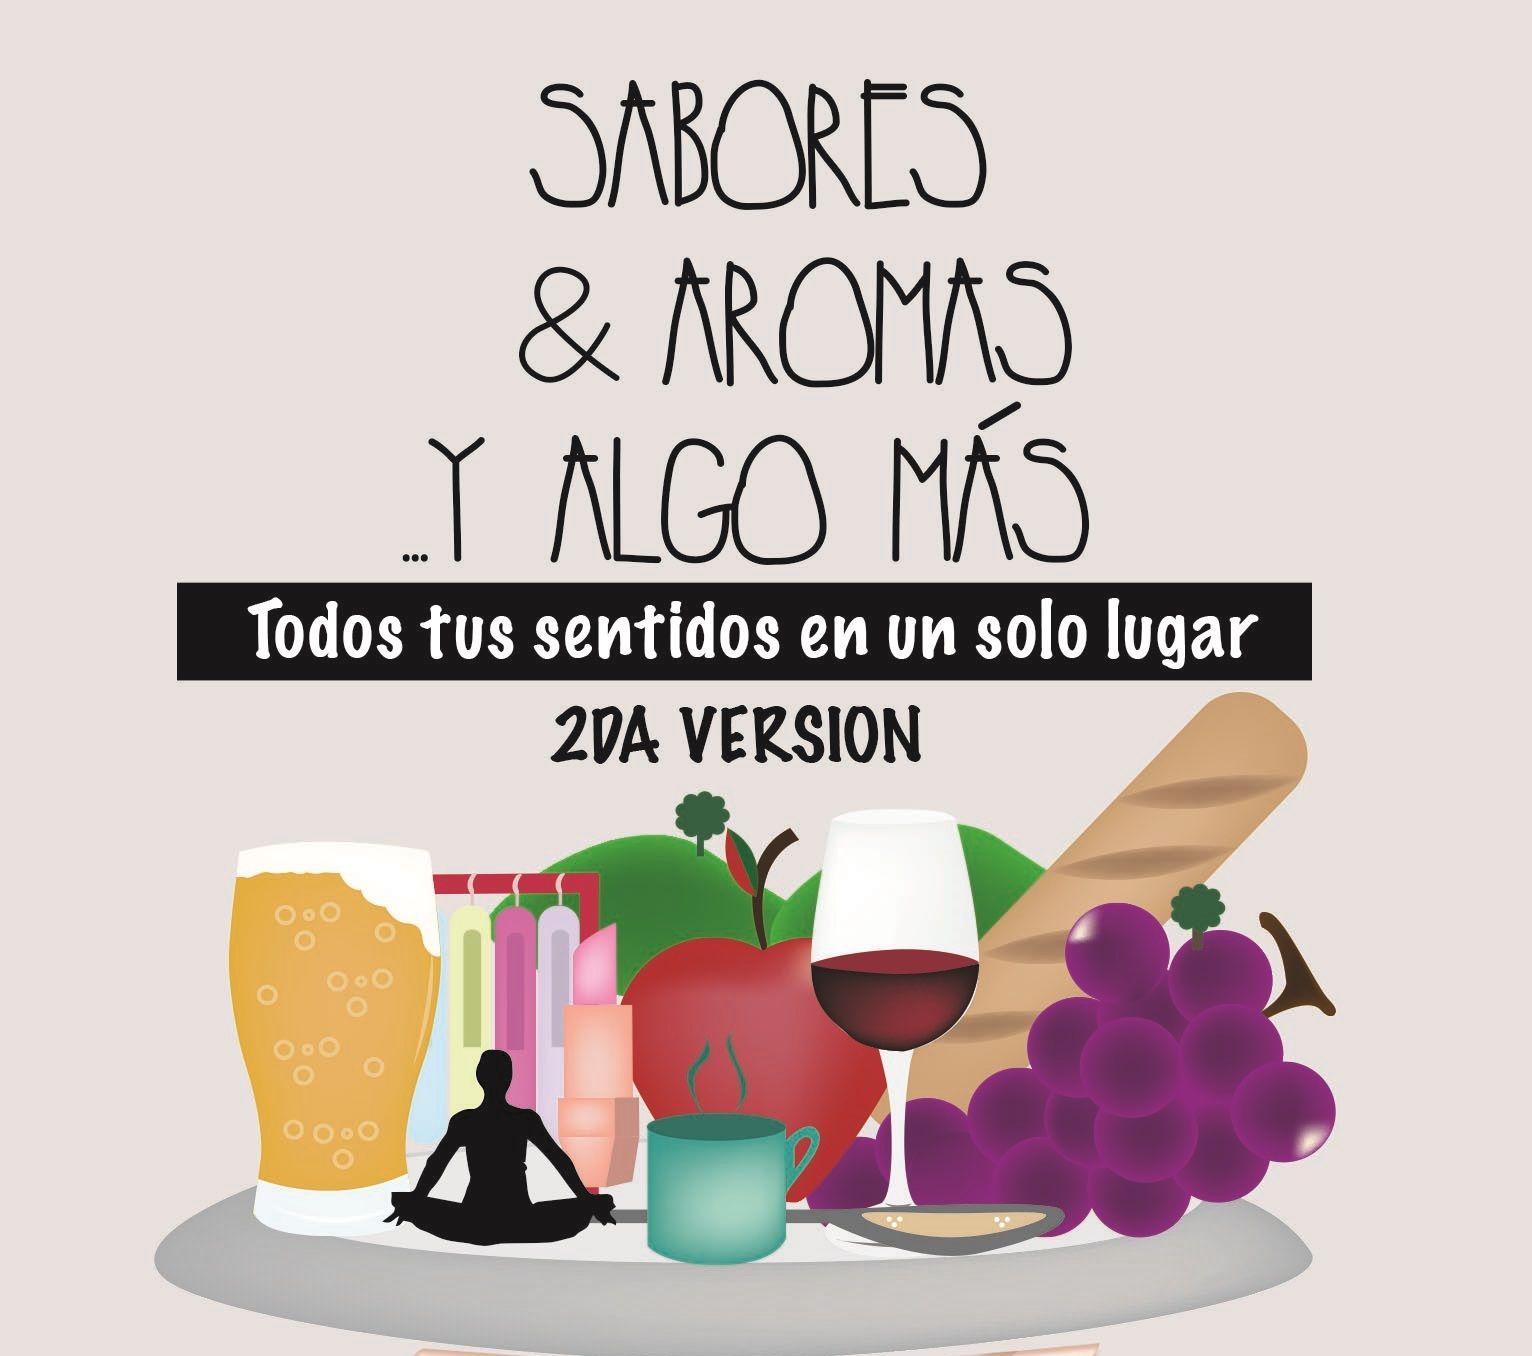 Sabores, Aromas y Algo mas 2013